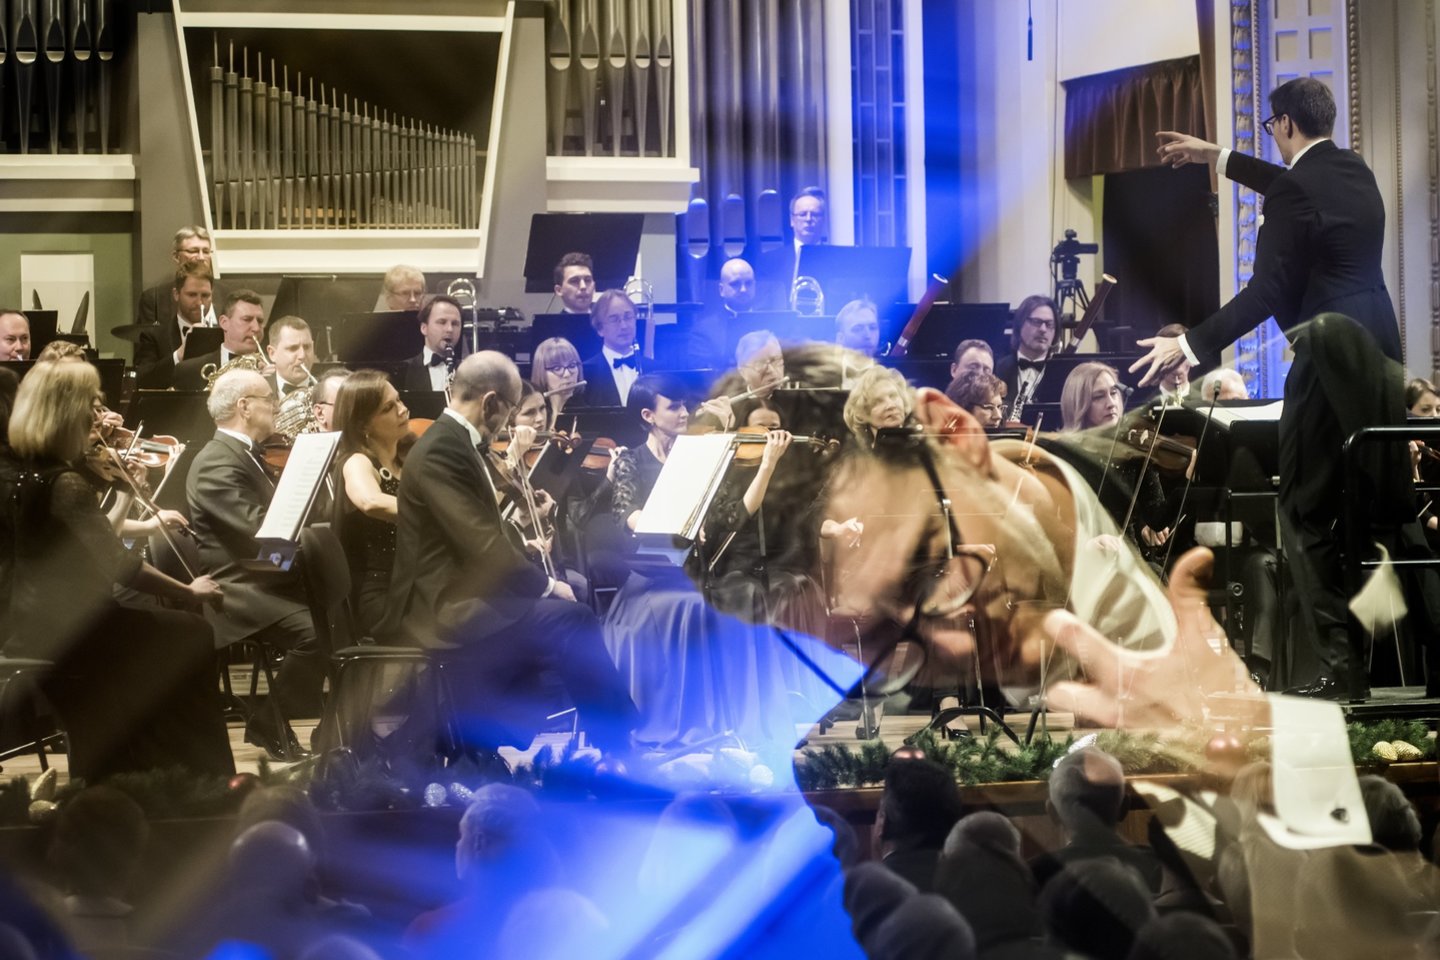 Lietuvos nacionalinis simfoninis orkestras, diriguojamas M.Pitrėno, parengė programą E.Balsio 100-mečiui.<br> D.Matvejevo nuotr.